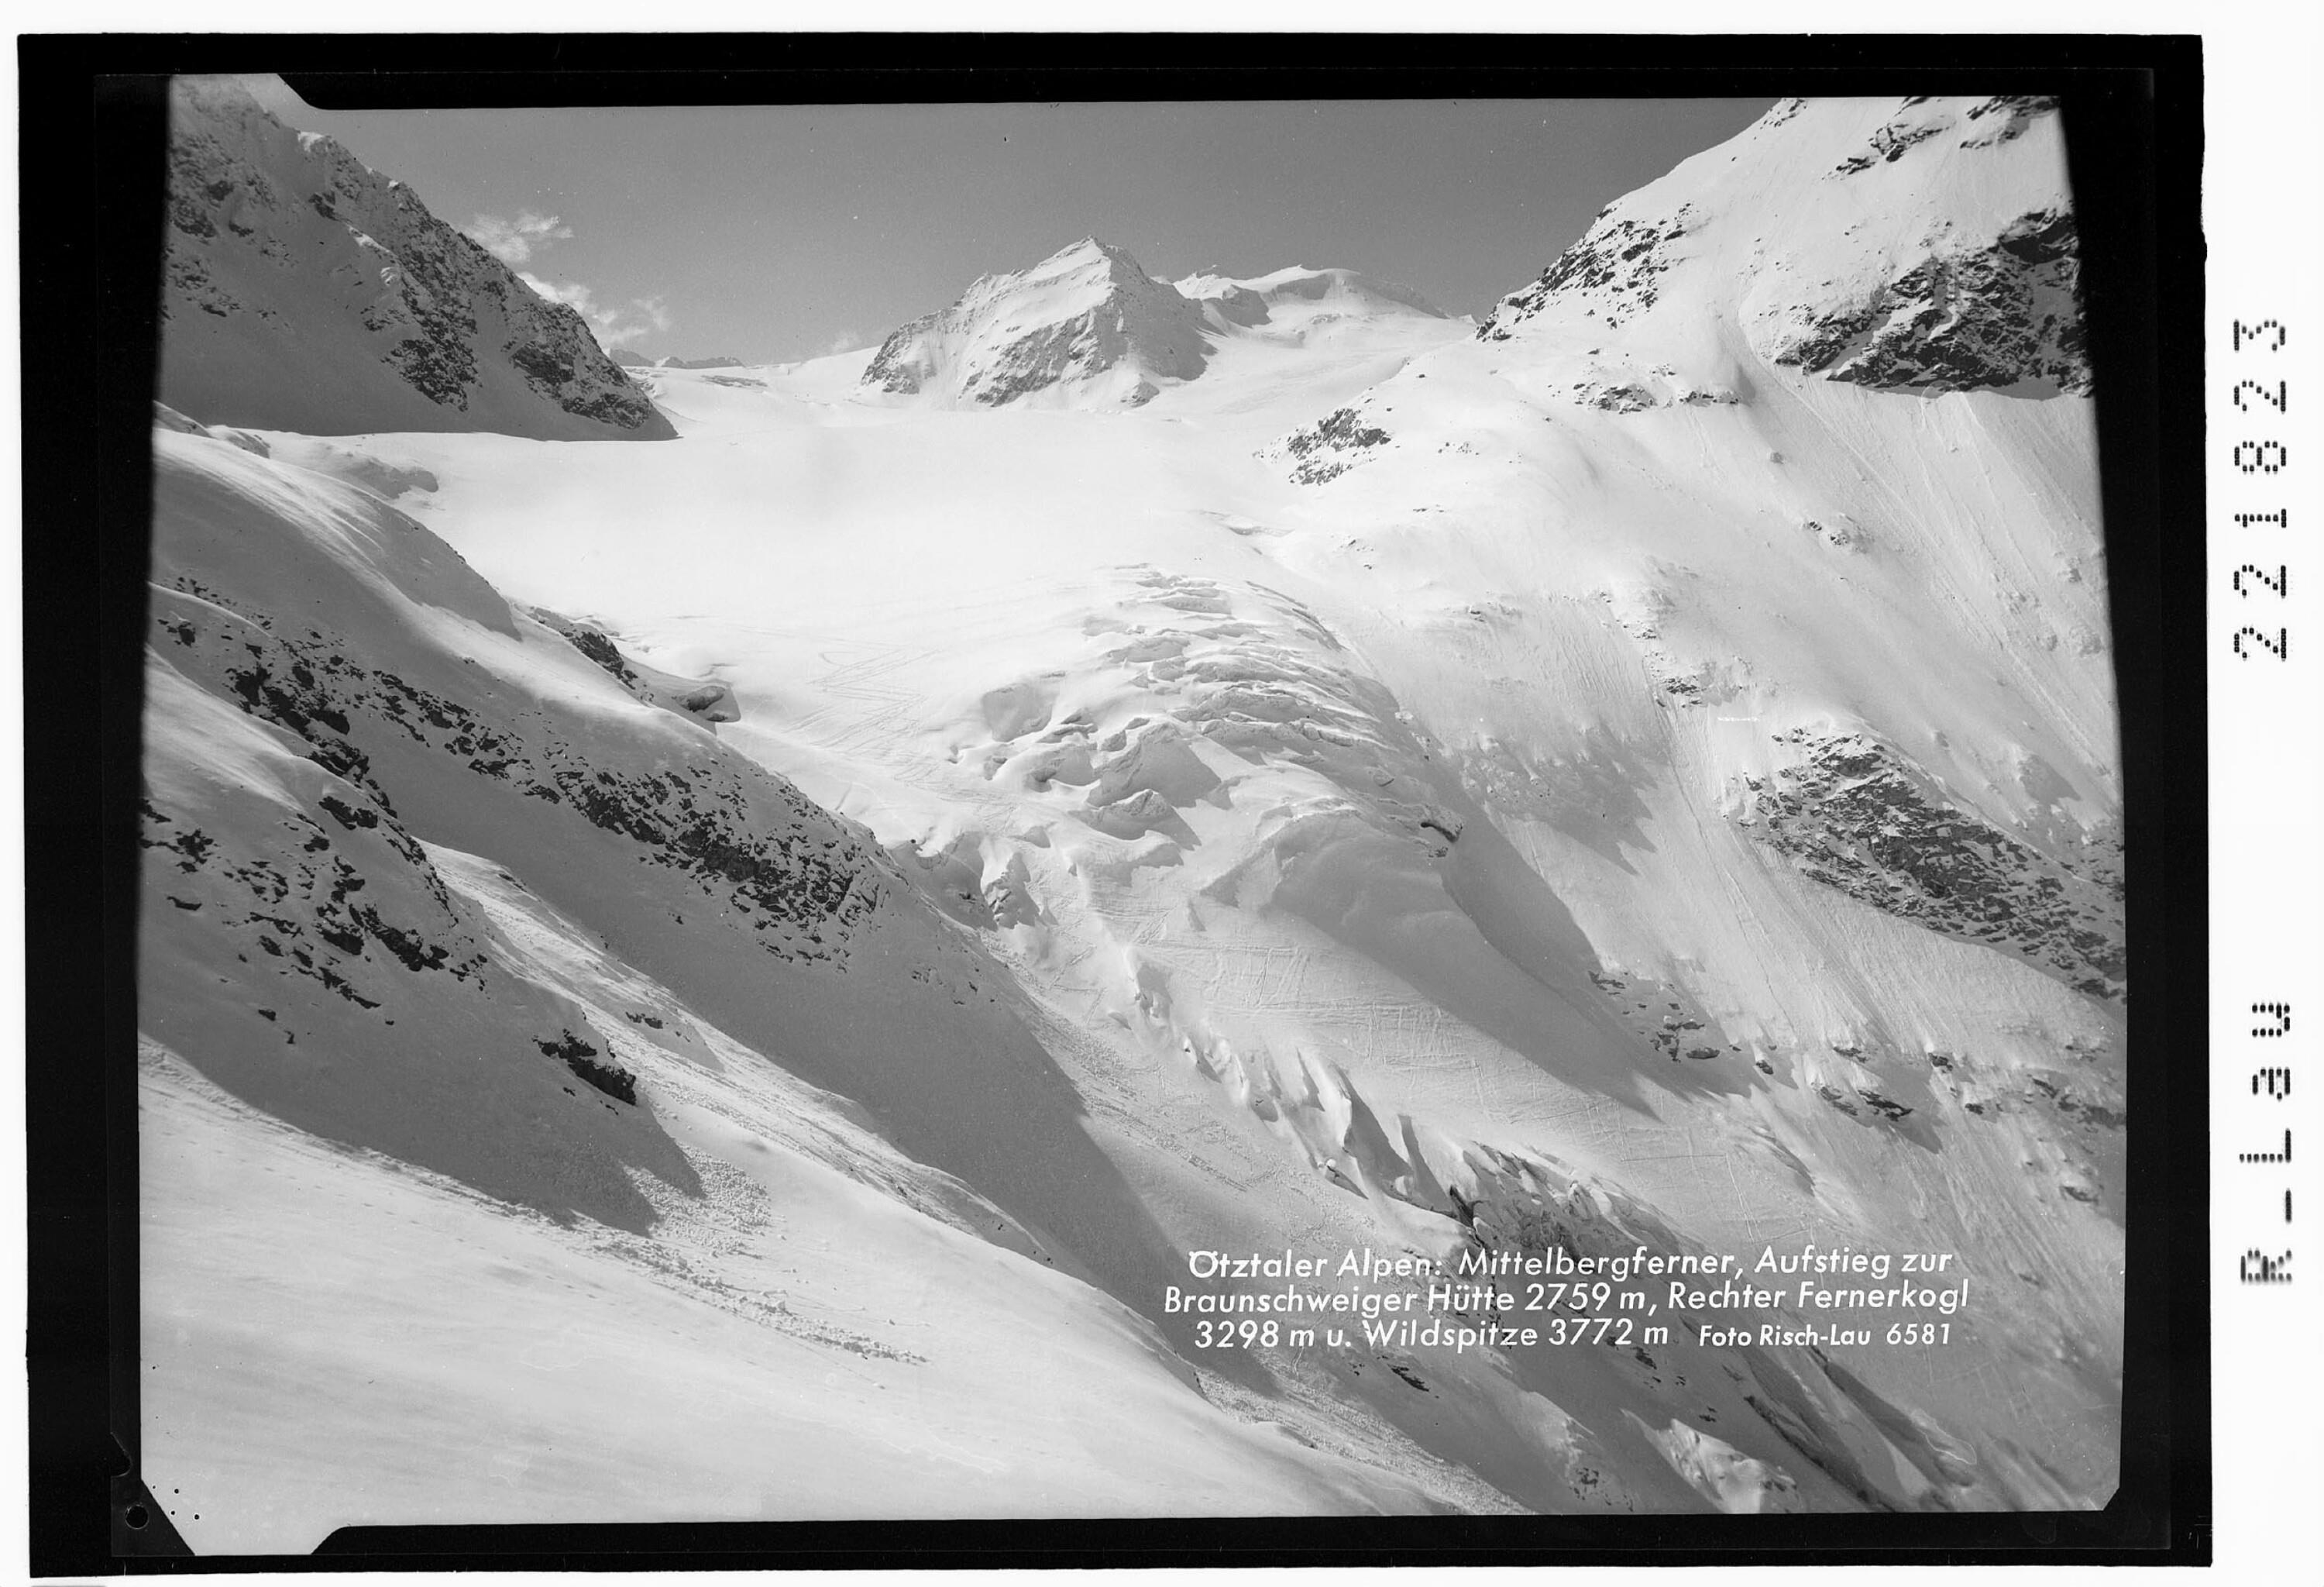 Ötztaler Alpen / Mittelbergferner - Aufstieg zur Braunschweiger Hütte 2759 m - Rechter Fernerkogel 3298 m und Wildspitze 3772 m></div>


    <hr>
    <div class=